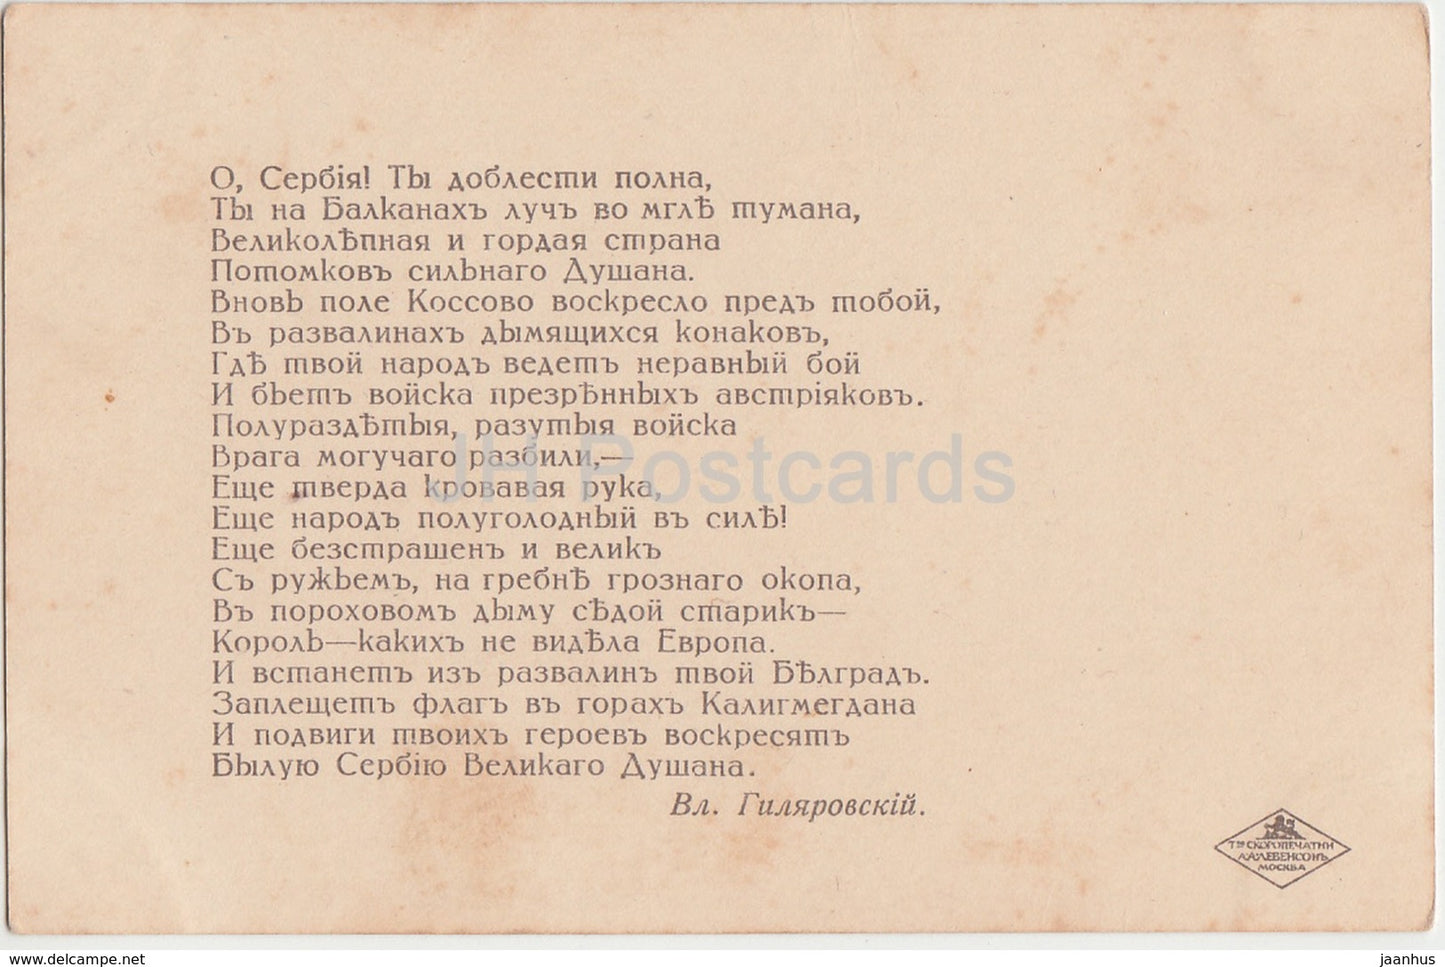 Paroles de V. Gilyarovsky - La Russie et la Serbie ensemble - charité - armoiries - carte postale ancienne - Russie impériale - inutilisée